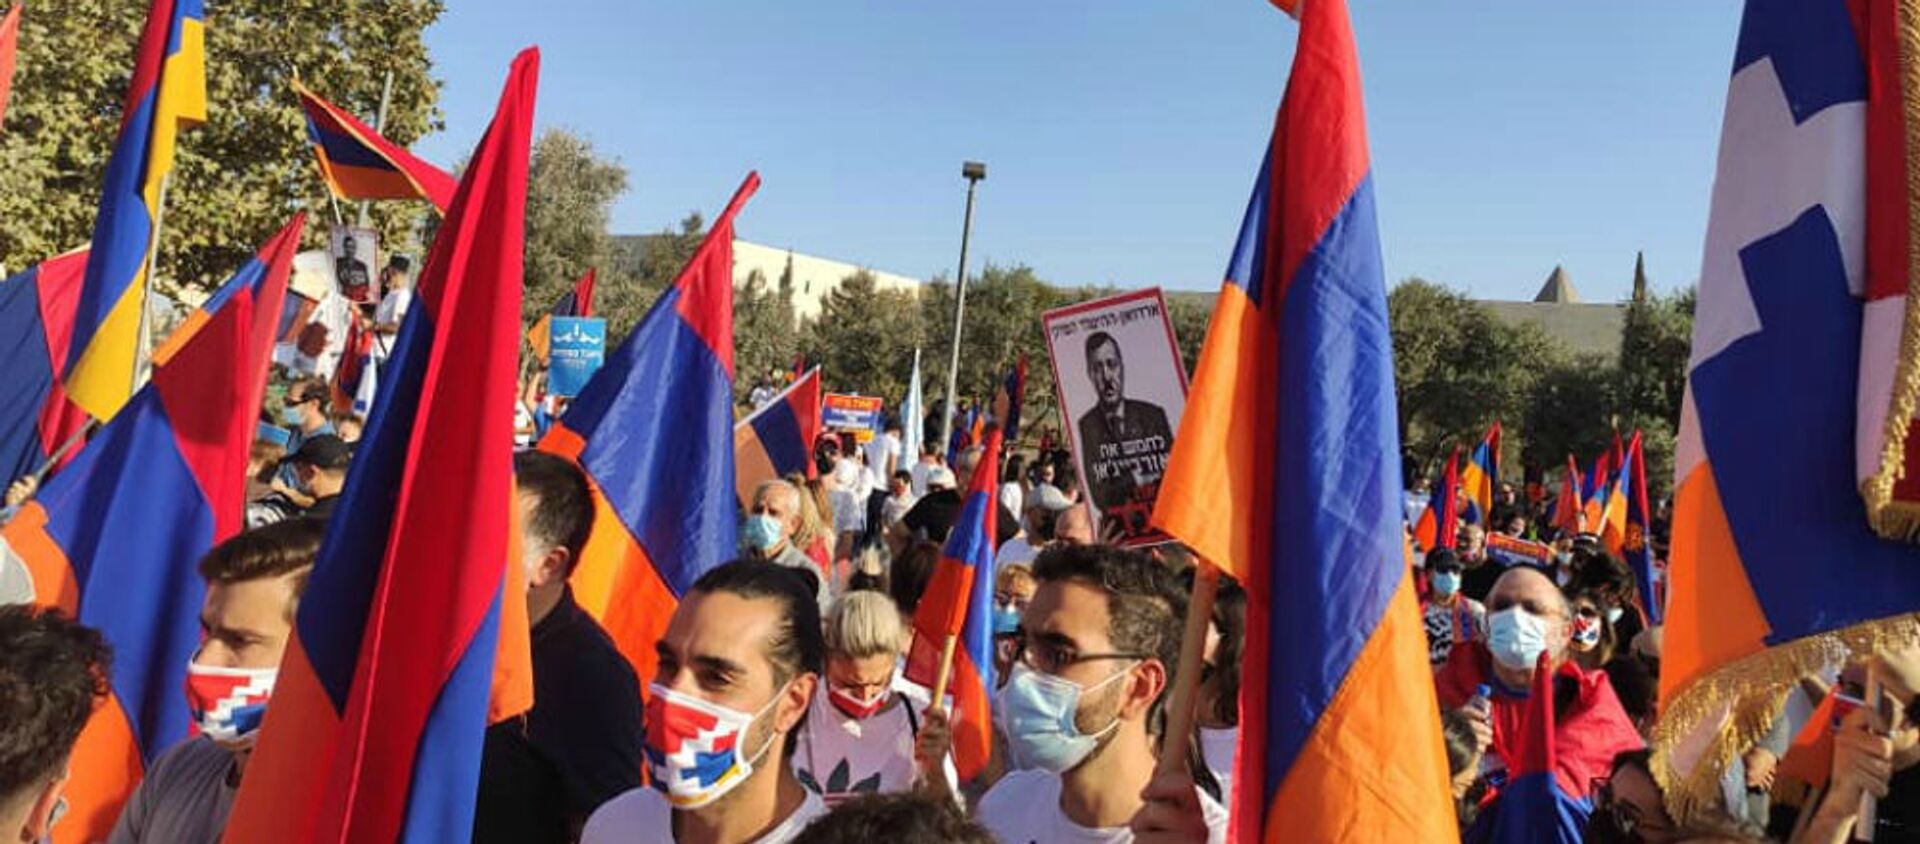 Армяне Израиля организовали акцию перед зданием МИД  (22 октября 2020). Иерусалим - Sputnik Армения, 1920, 23.10.2020